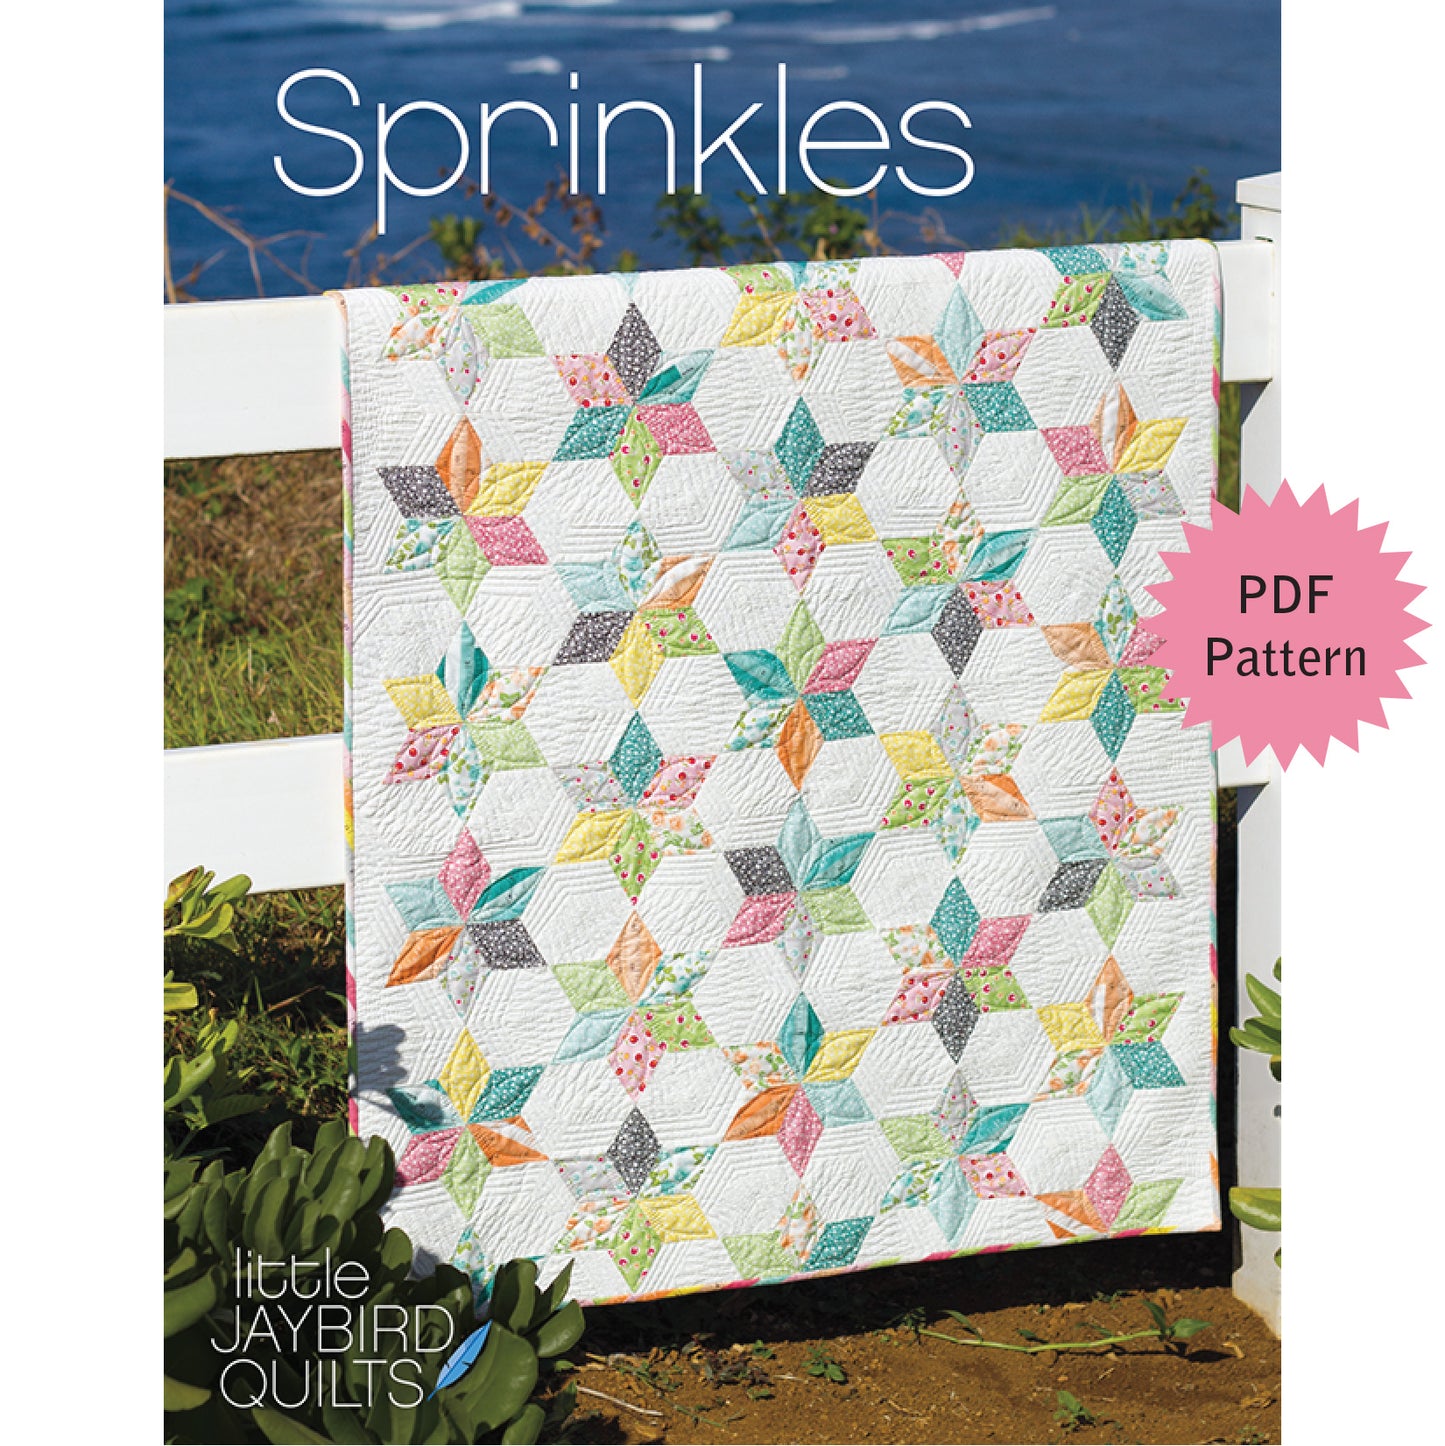 Sprinkles PDF Pattern